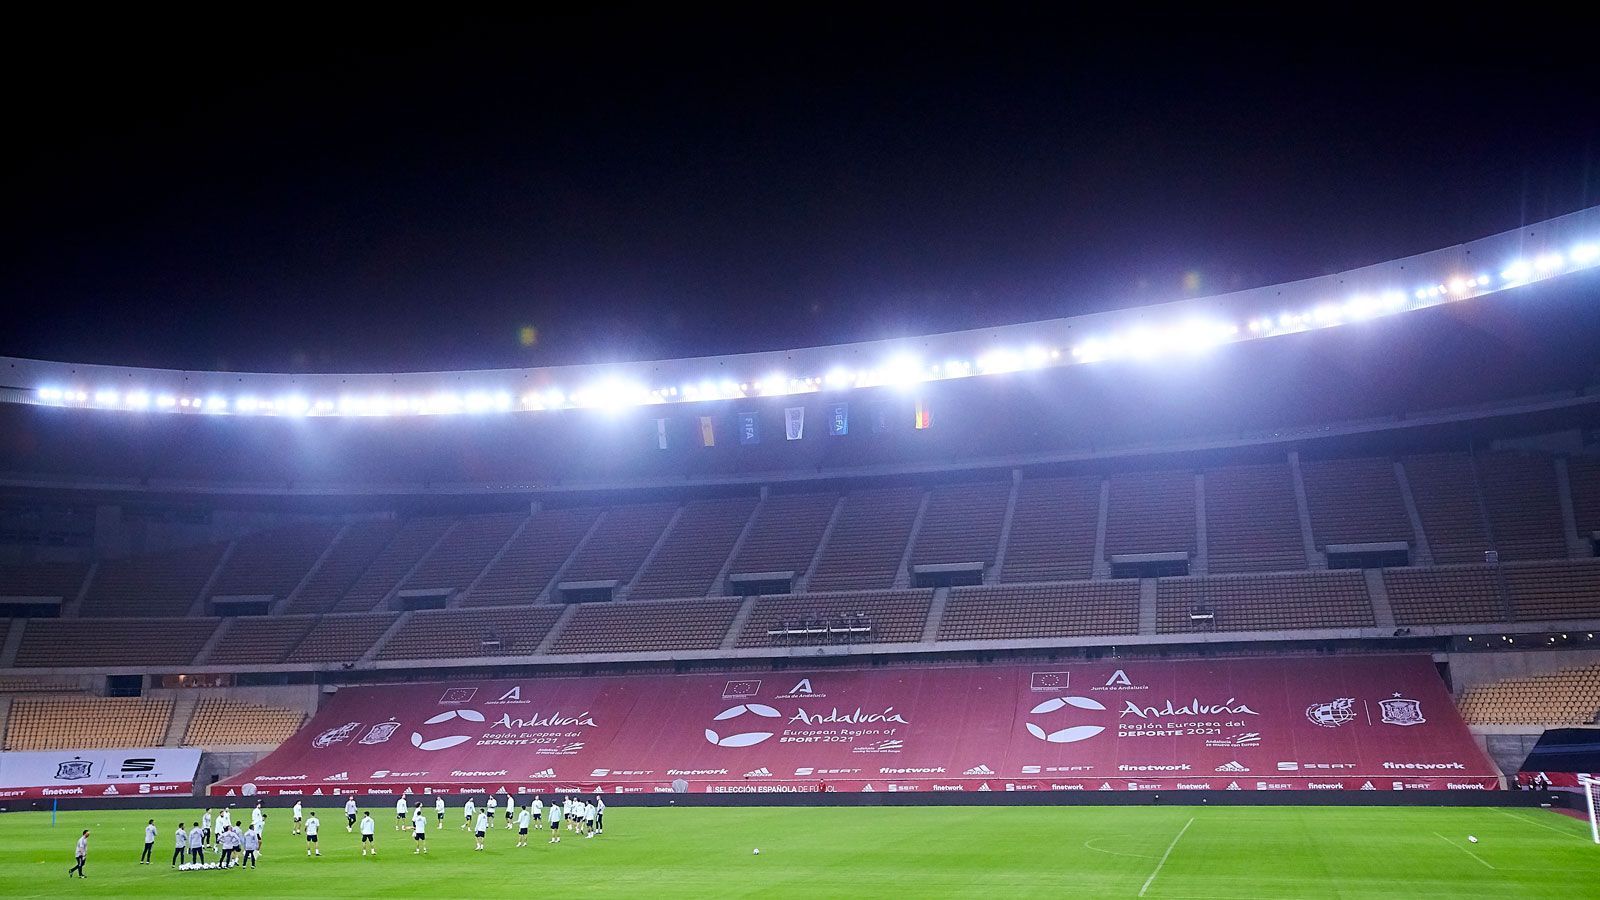 
                <strong>Sevilla - Estadio La Cartuja</strong><br>
                &#x2022; Kapazität: 60.000 -<br>&#x2022; Auslastung: noch offen, wohl 25-33 Prozent (rund 15.000)<br>
              